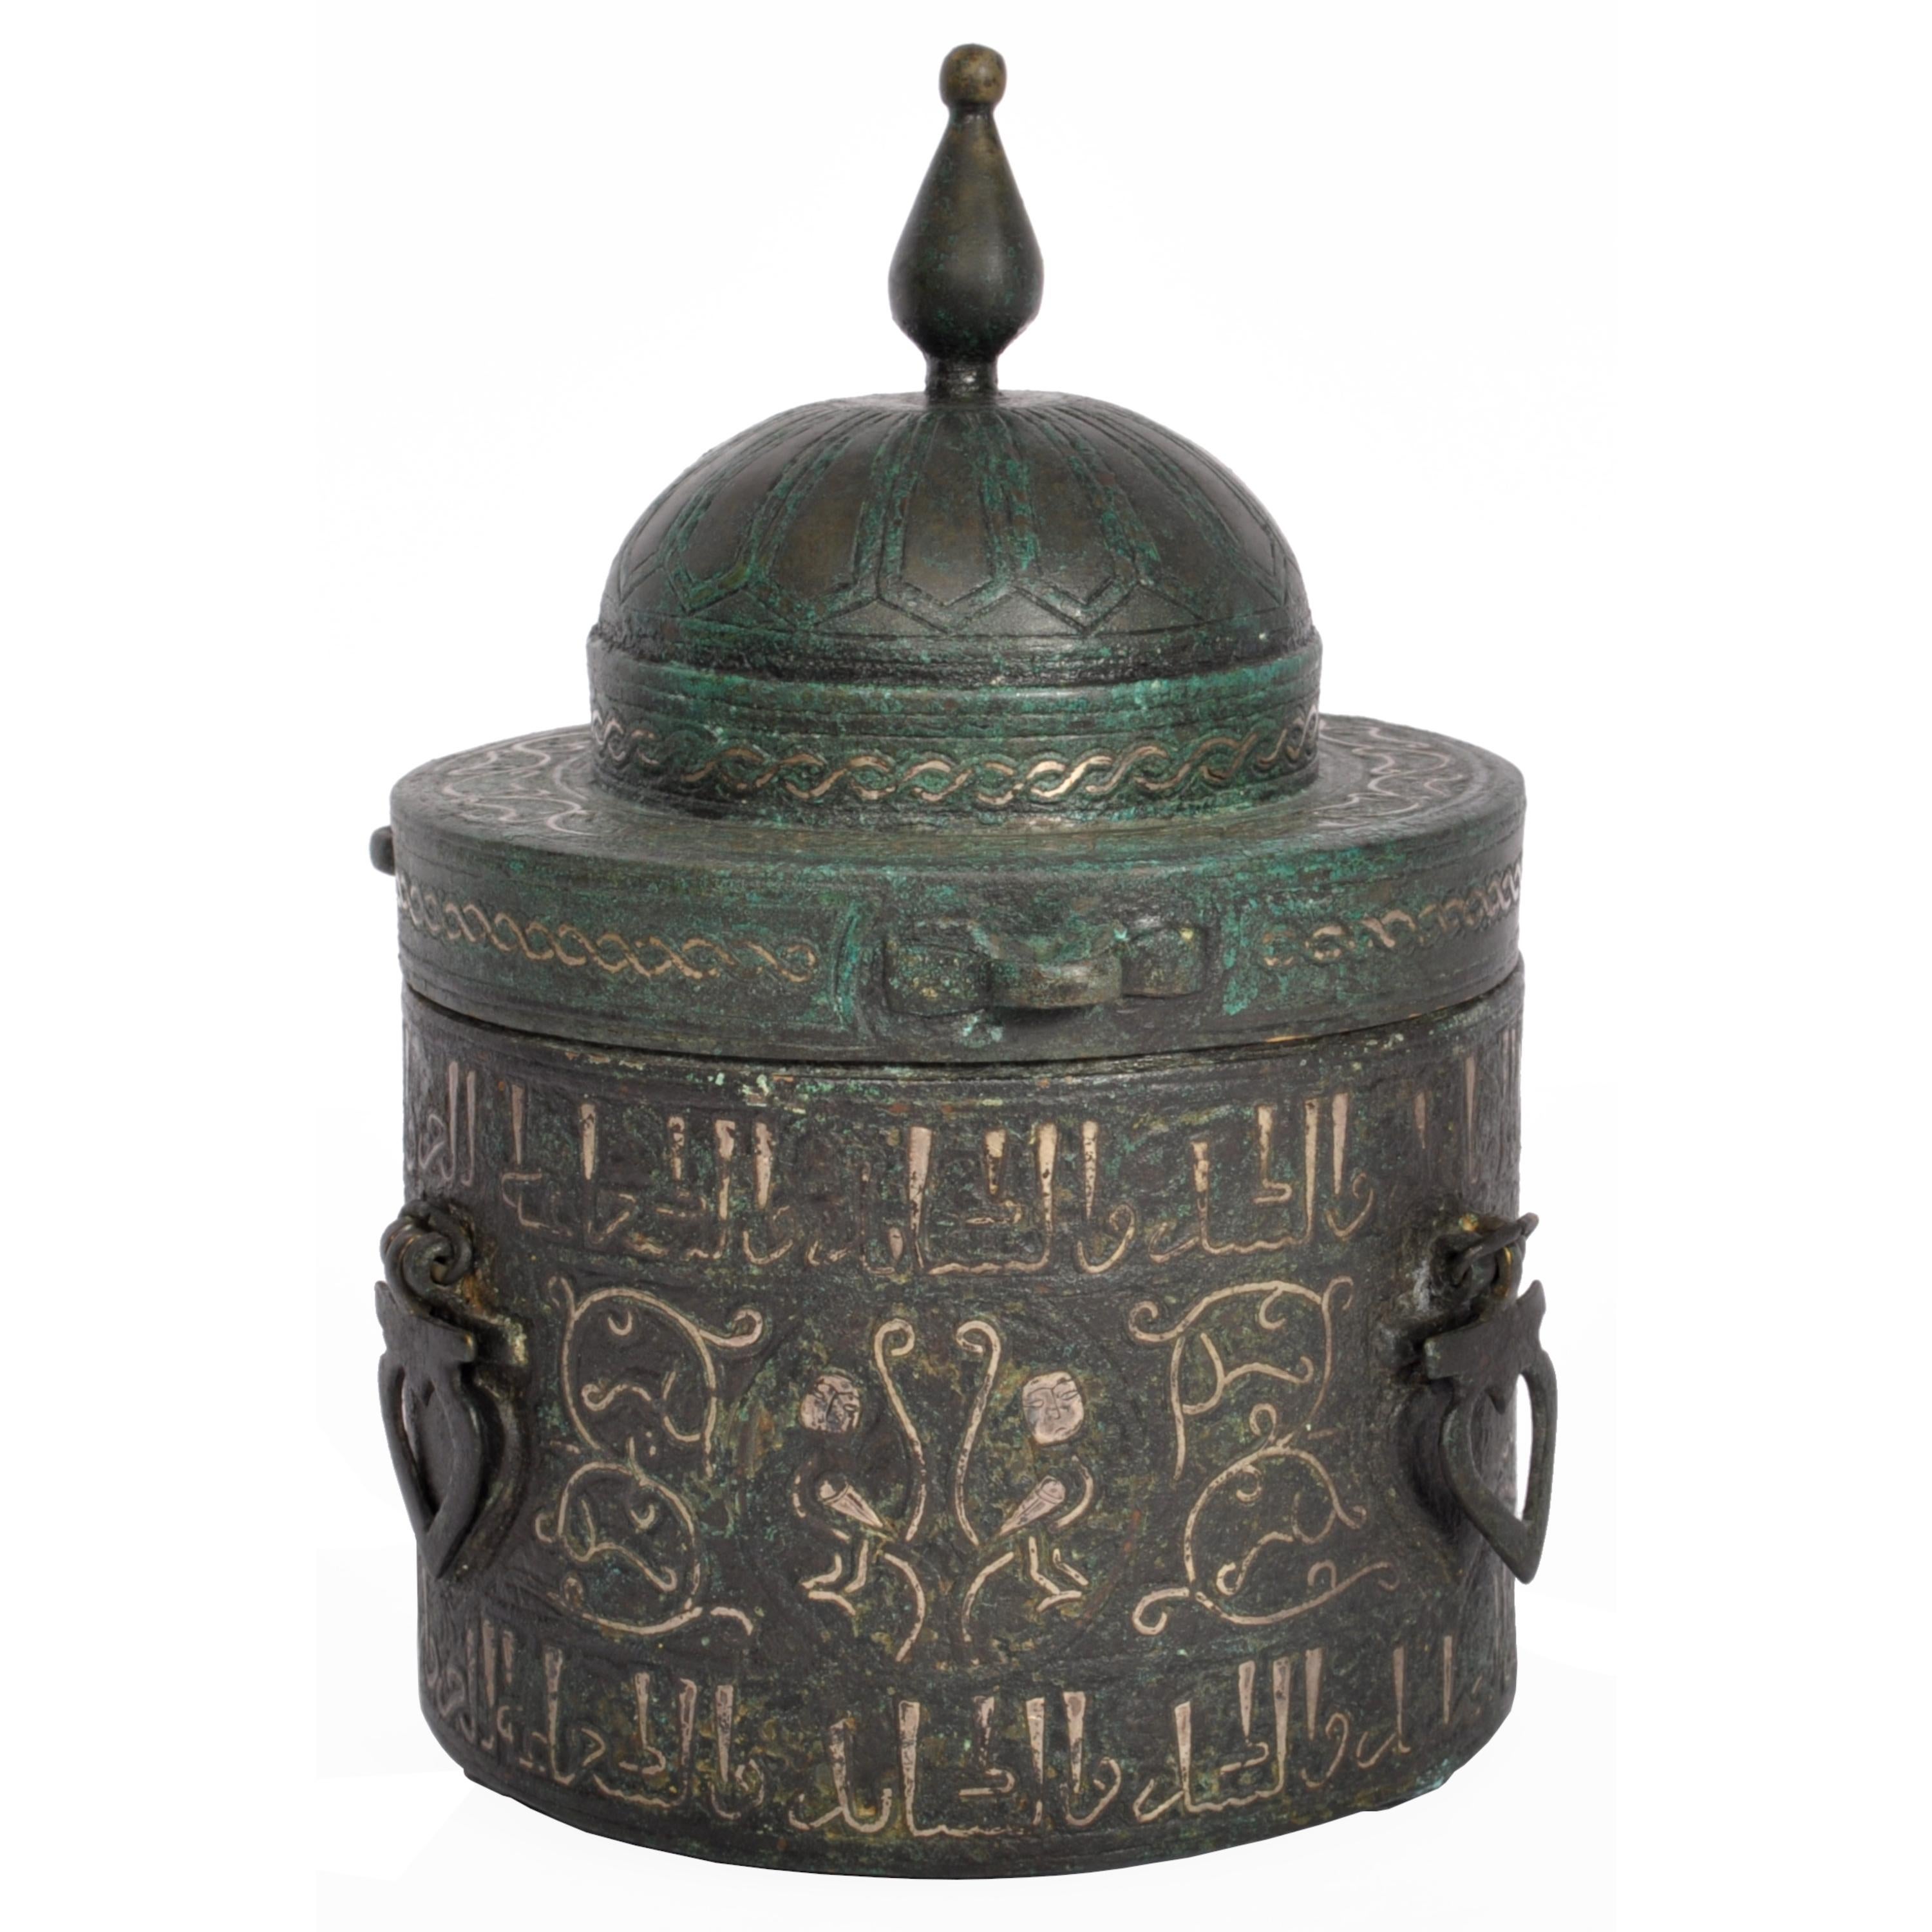 Important encrier et couvercle en bronze et argent incrusté du Khurasan, Perse orientale, vers 1200.
L'encrier, de forme cylindrique, est doté d'un couvercle en forme de dôme peu profond, d'un haut fleuron en forme de pommeau et incrusté d'une